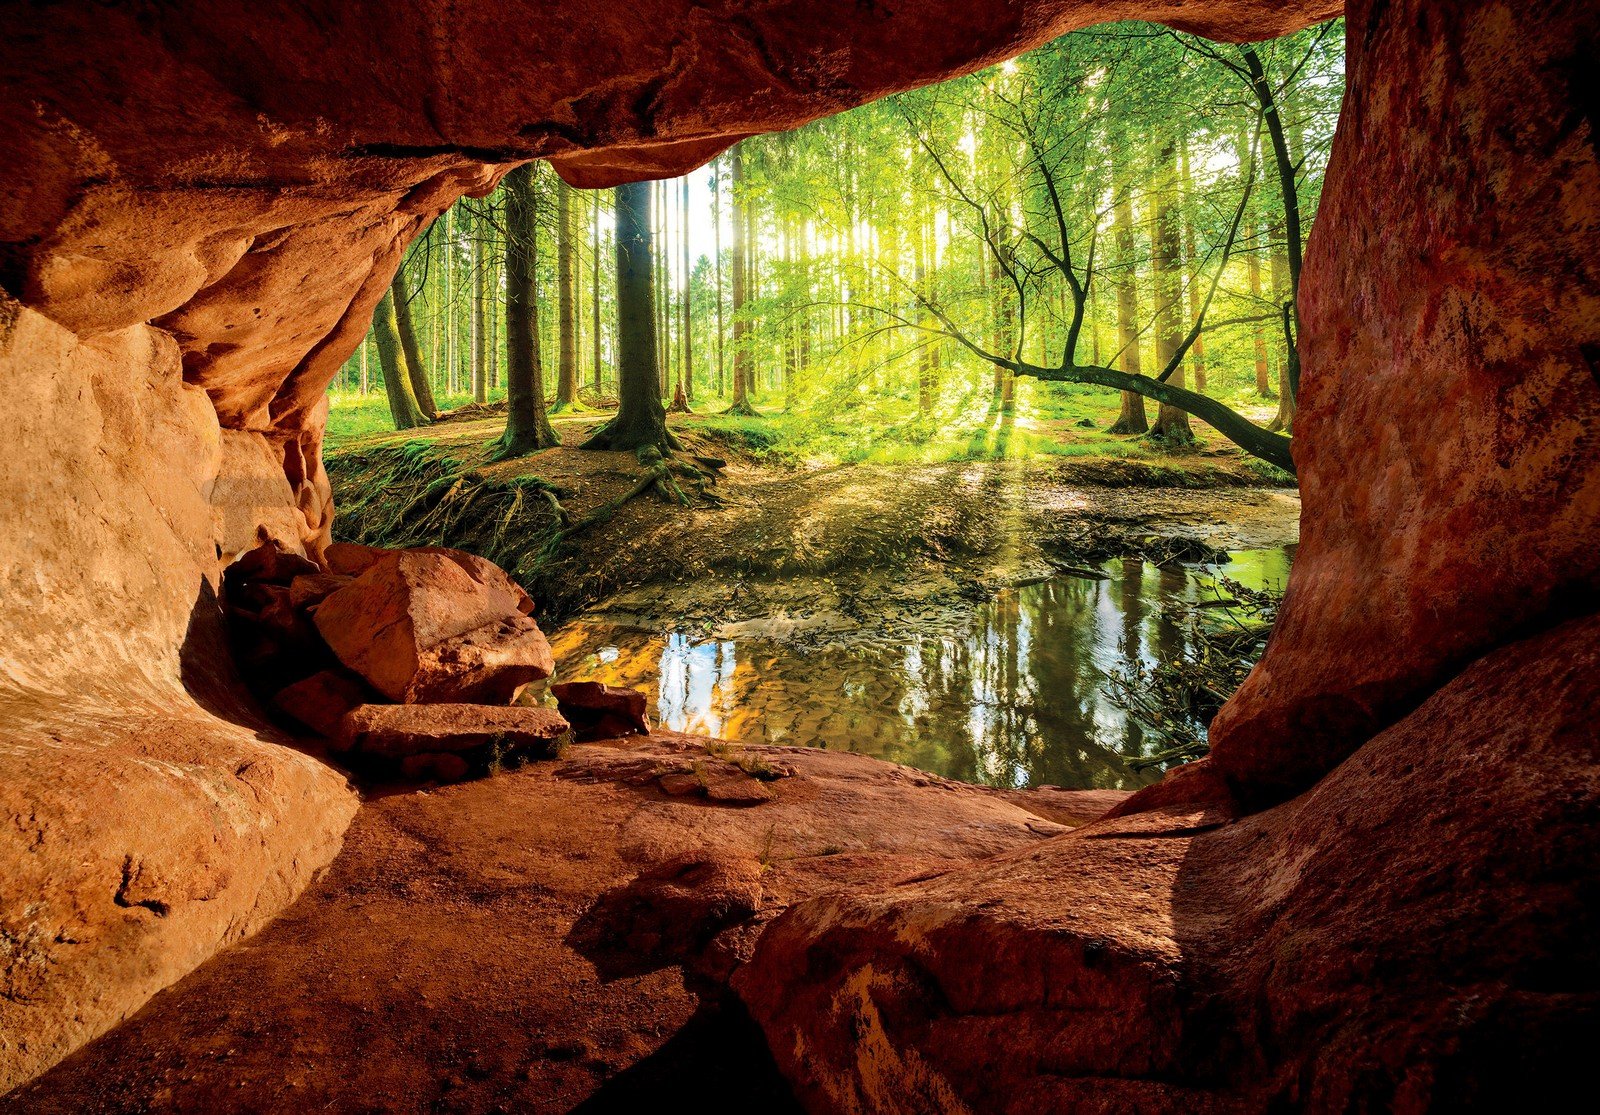 Vlies fotótapéta: Barlang az ártéri erdő mellett - 368x254 cm